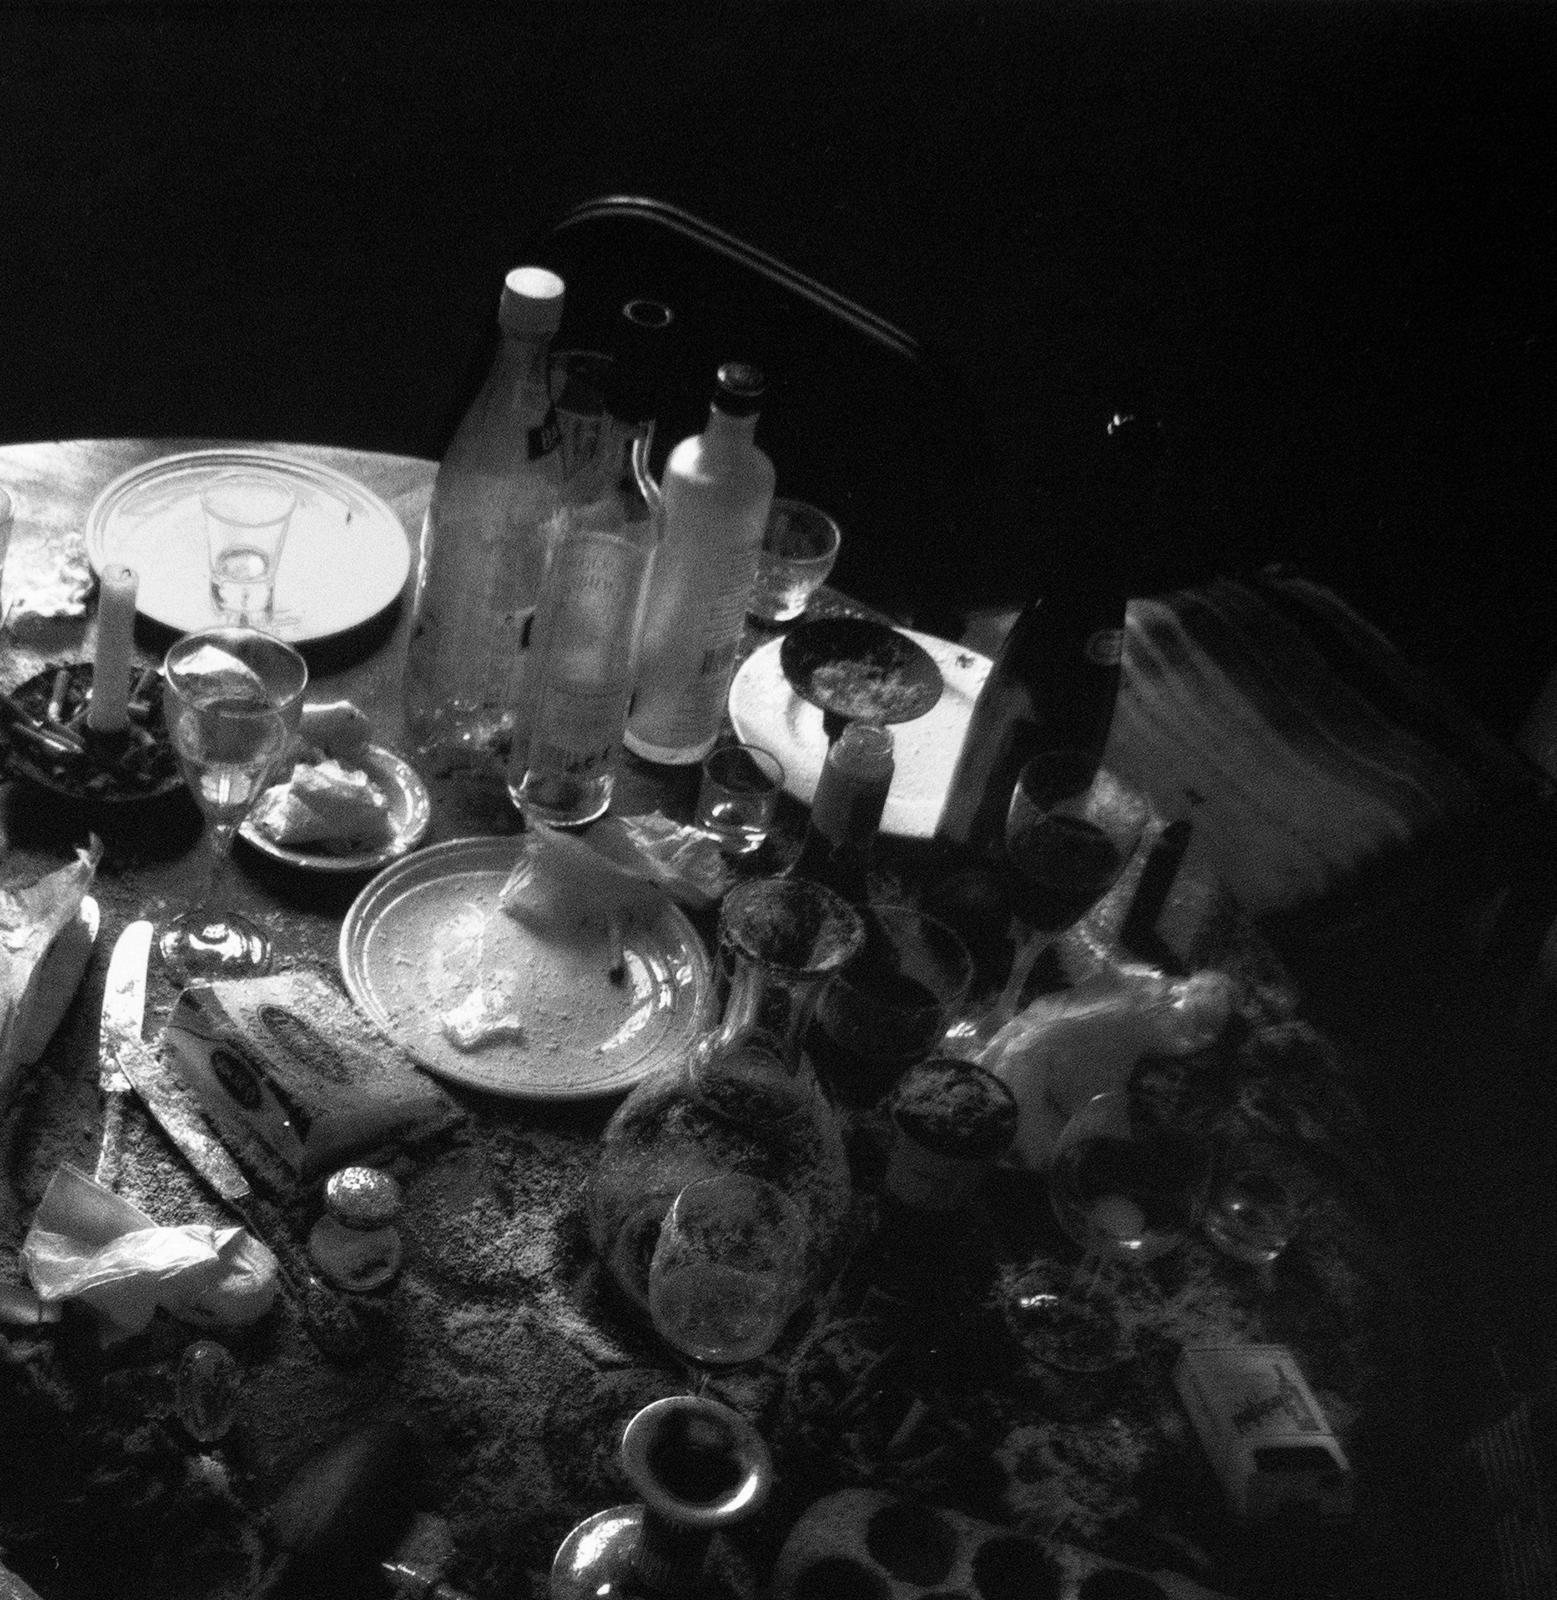  Abendessen – Silber-Gelatine-Druck, signiert, limitierte Auflage, zeitgenössisches Stillleben (Zeitgenössisch), Photograph, von Ian Sanderson